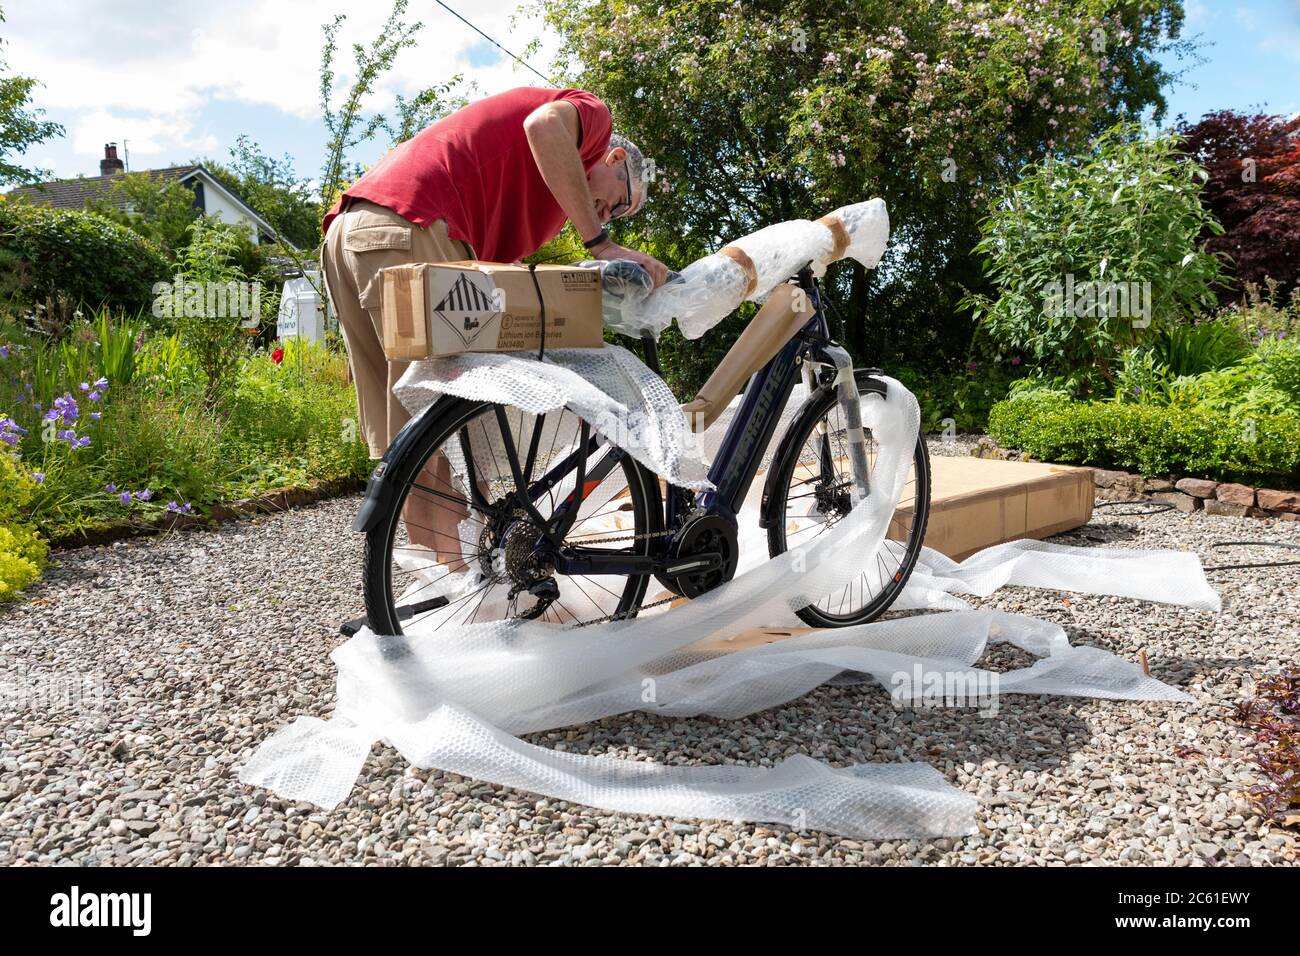 Entrega en casa de bicicleta eléctrica ebike pedido en línea durante el  cierre coronavirus - bicicleta sacada de la caja de bicicletas y  desenvolver envoltura de burbujas - Reino Unido Fotografía de